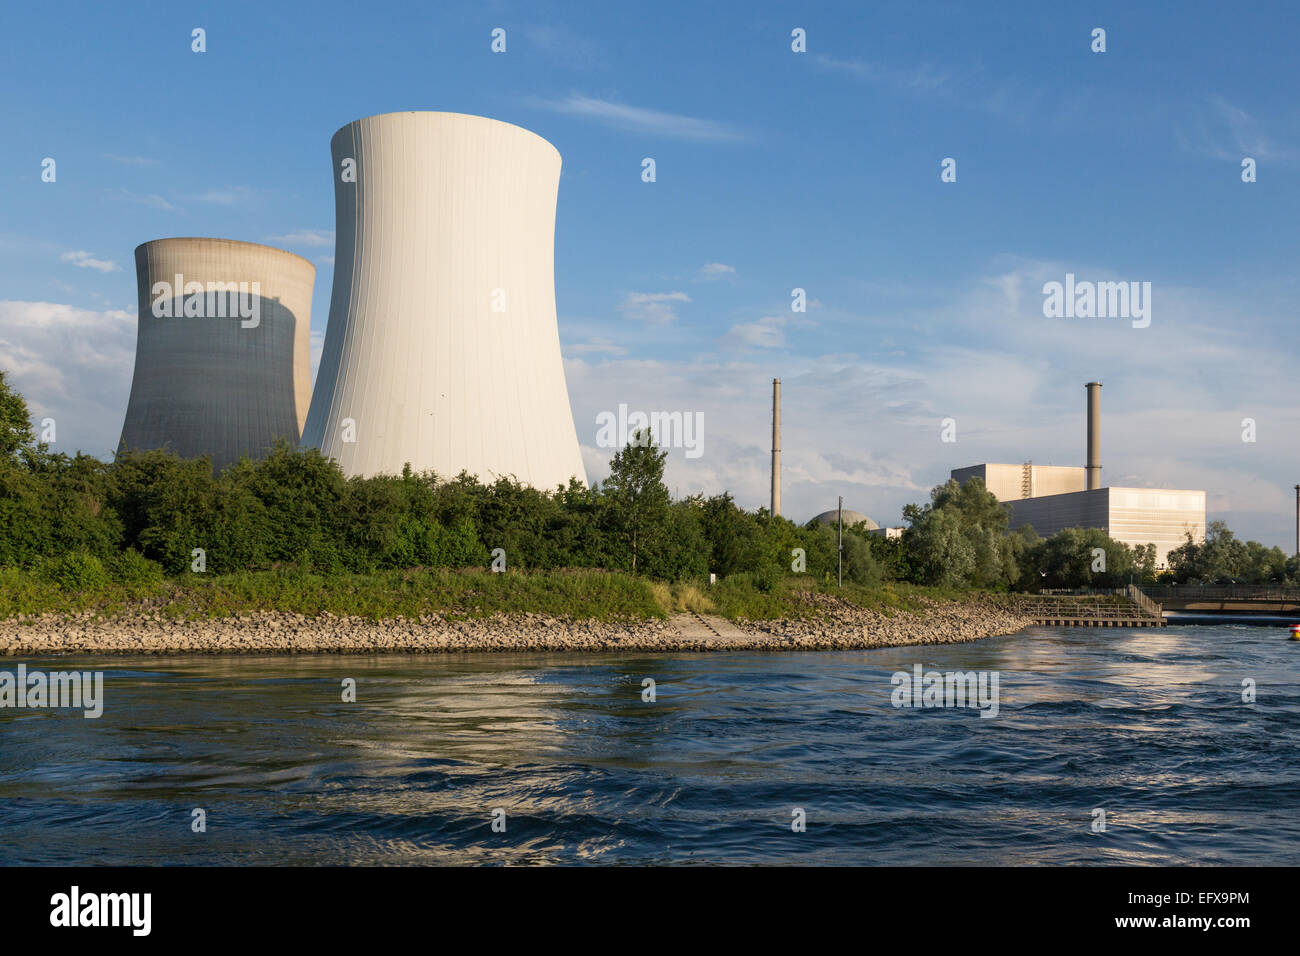 Kernkraftwerk Philippsburg in der Nähe von Karlsruhe, Deutschland am Rhein Stockfoto